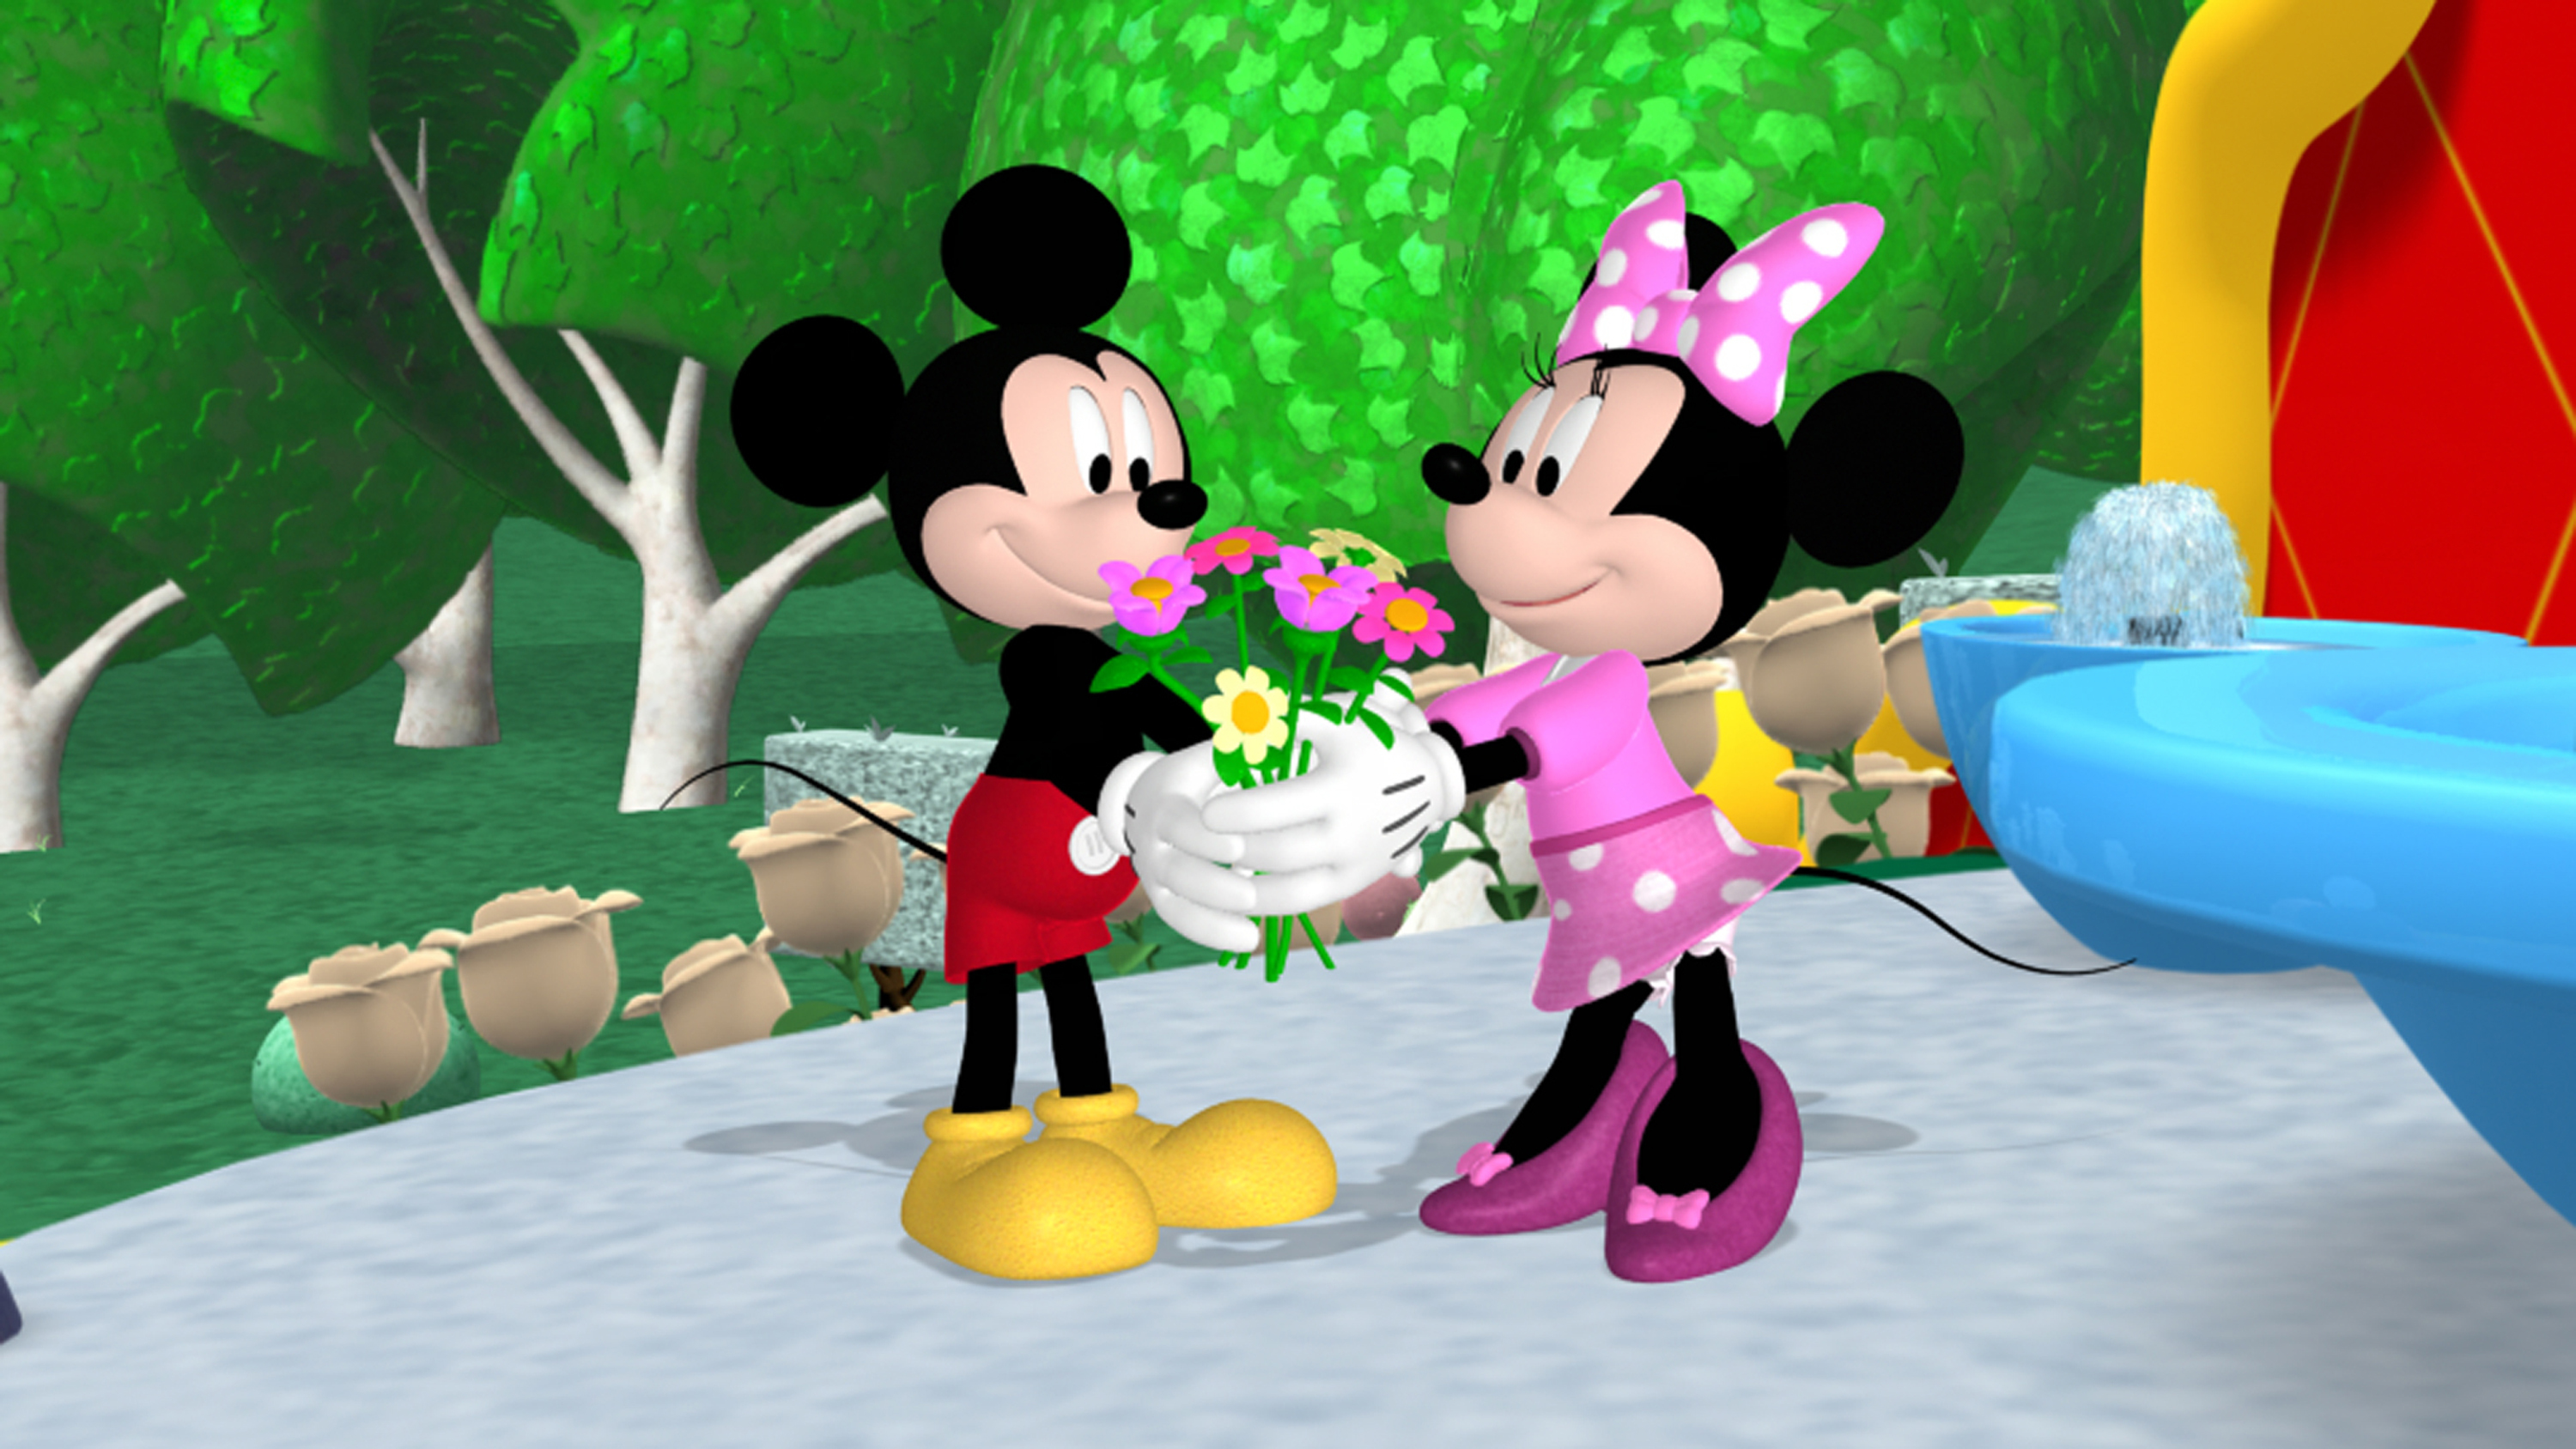 sfatulparintilor.ro - Mickey si Minnie isi serbeaza ziua de nastere la Clubul lui Mickey Mouse